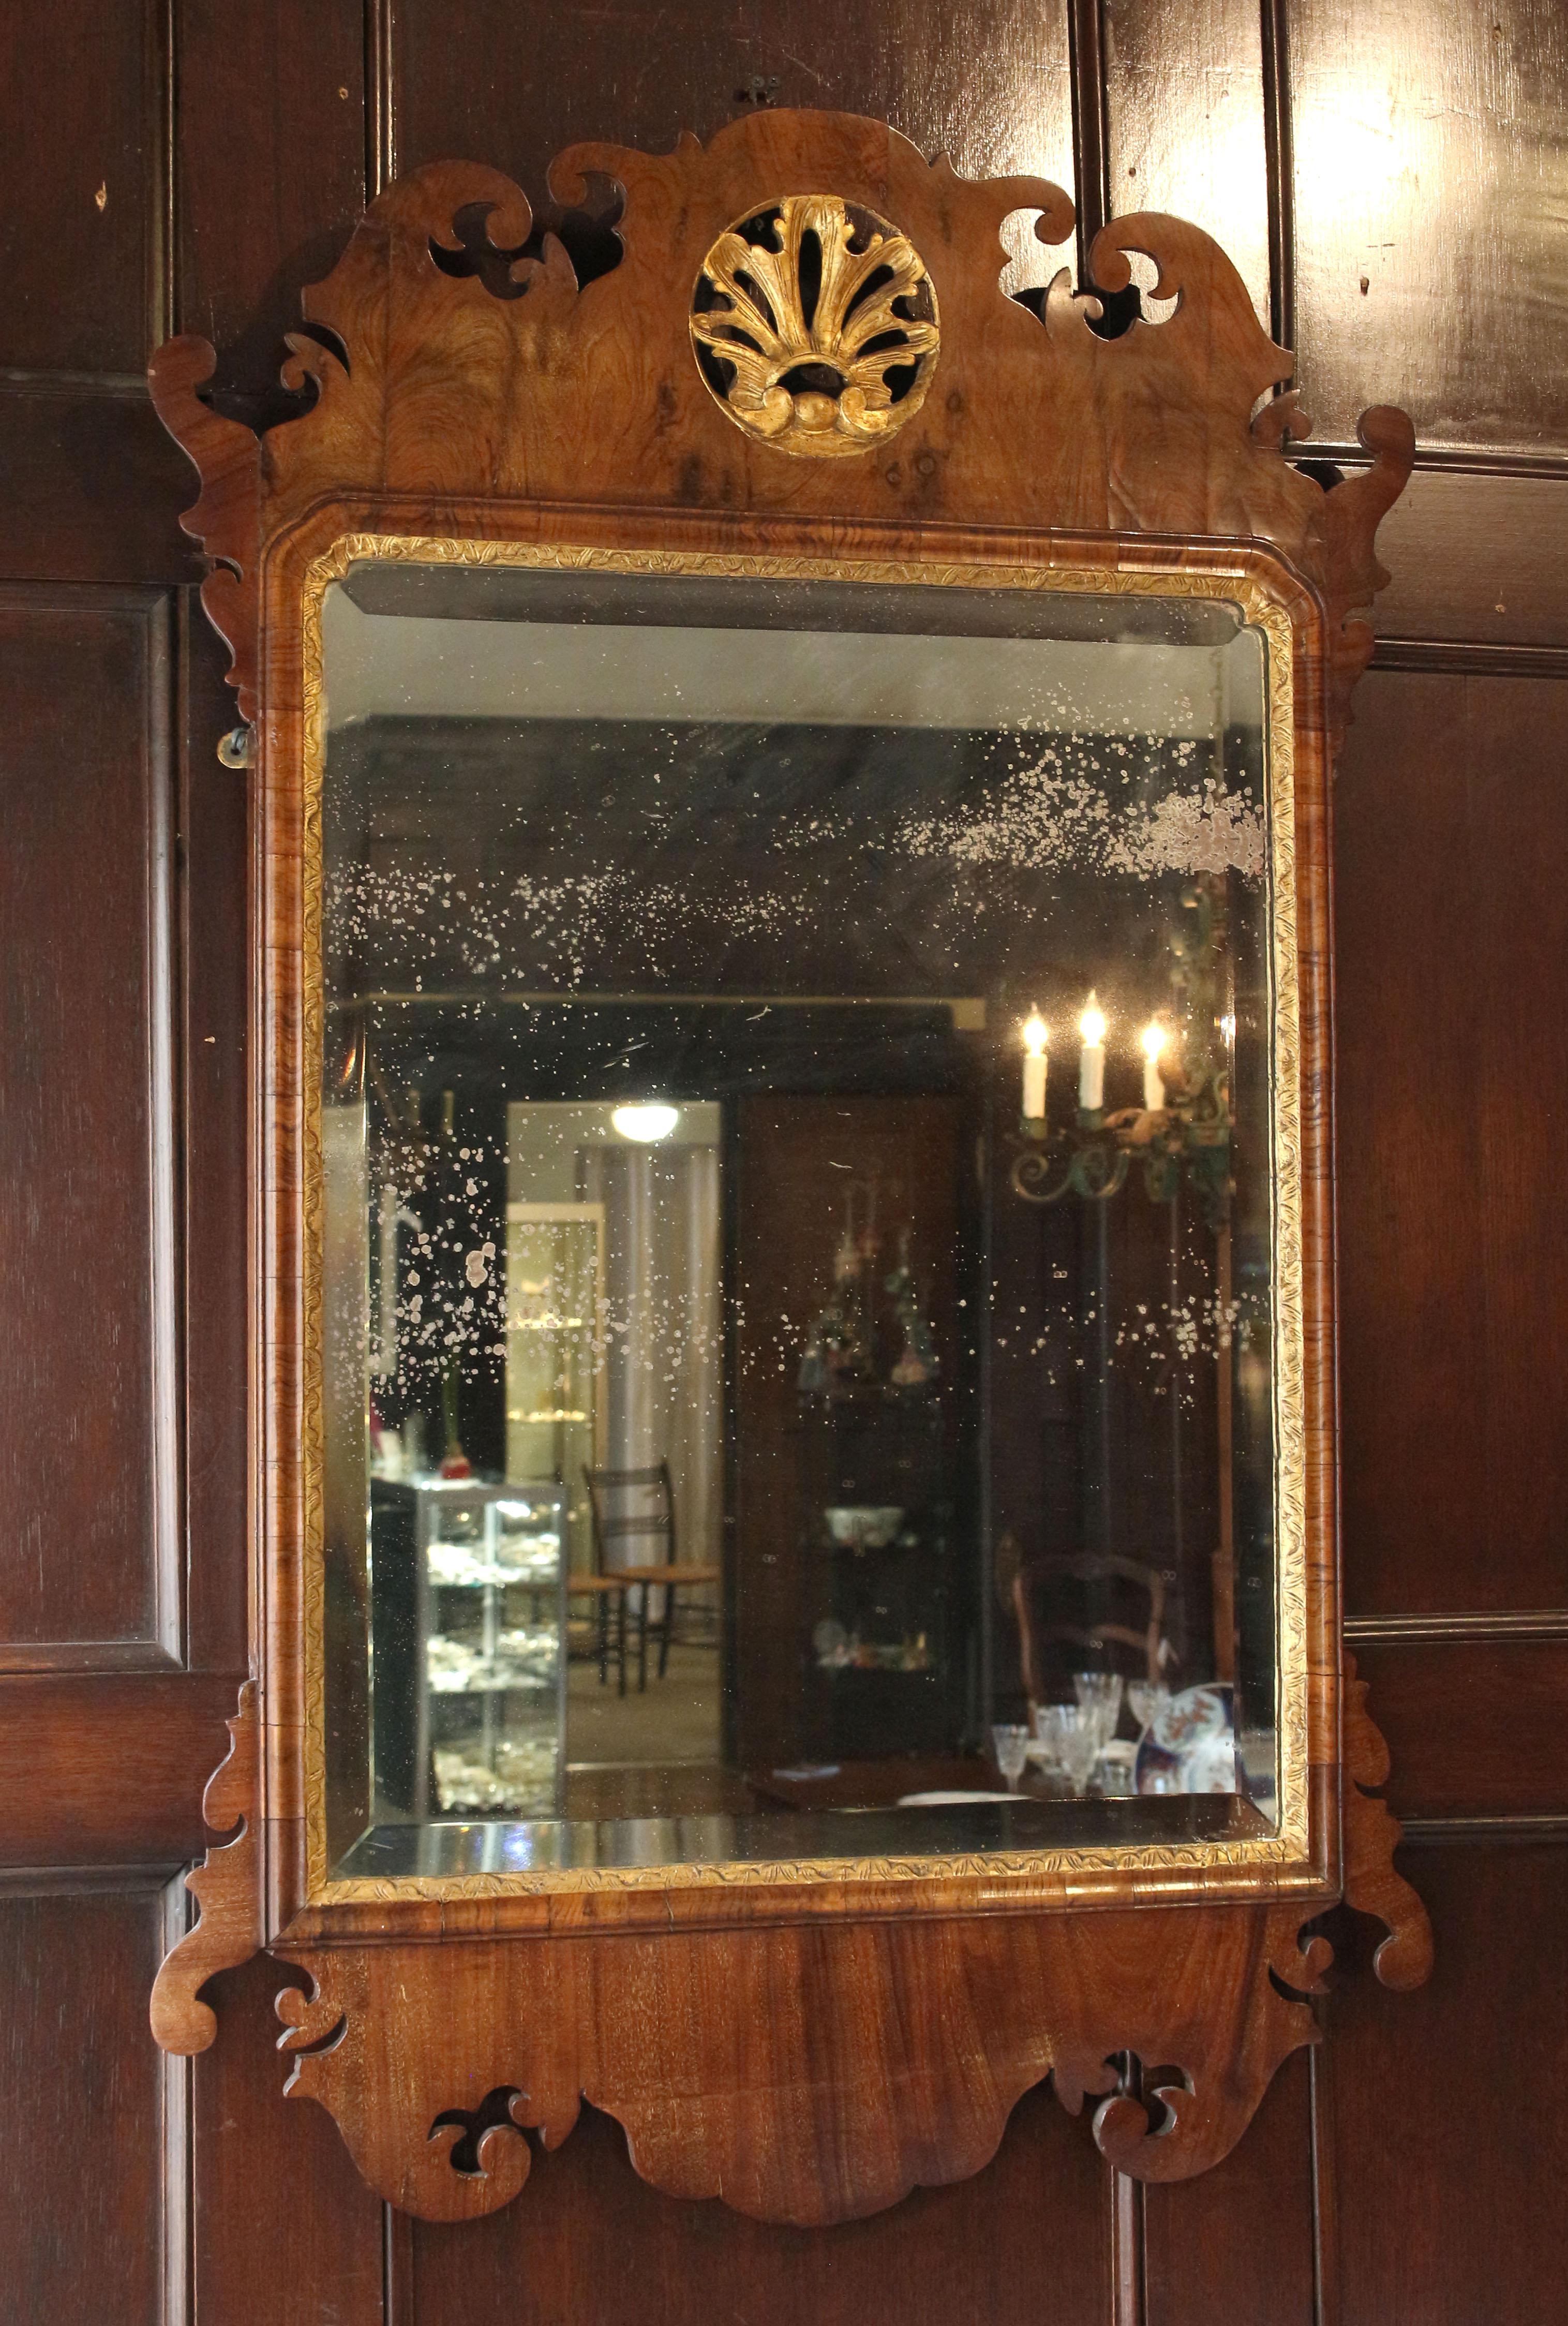 Spiegel aus der Mitte des 18. Jahrhunderts aus der Zeit von George II und George III. Nussbaum mit Paketvergoldung. Zentrale runde vergoldete Kartusche in der wohlgeformten oberen Kappe. Spiegelplatte aus vergoldetem, abgeschrägtem Glas mit den für